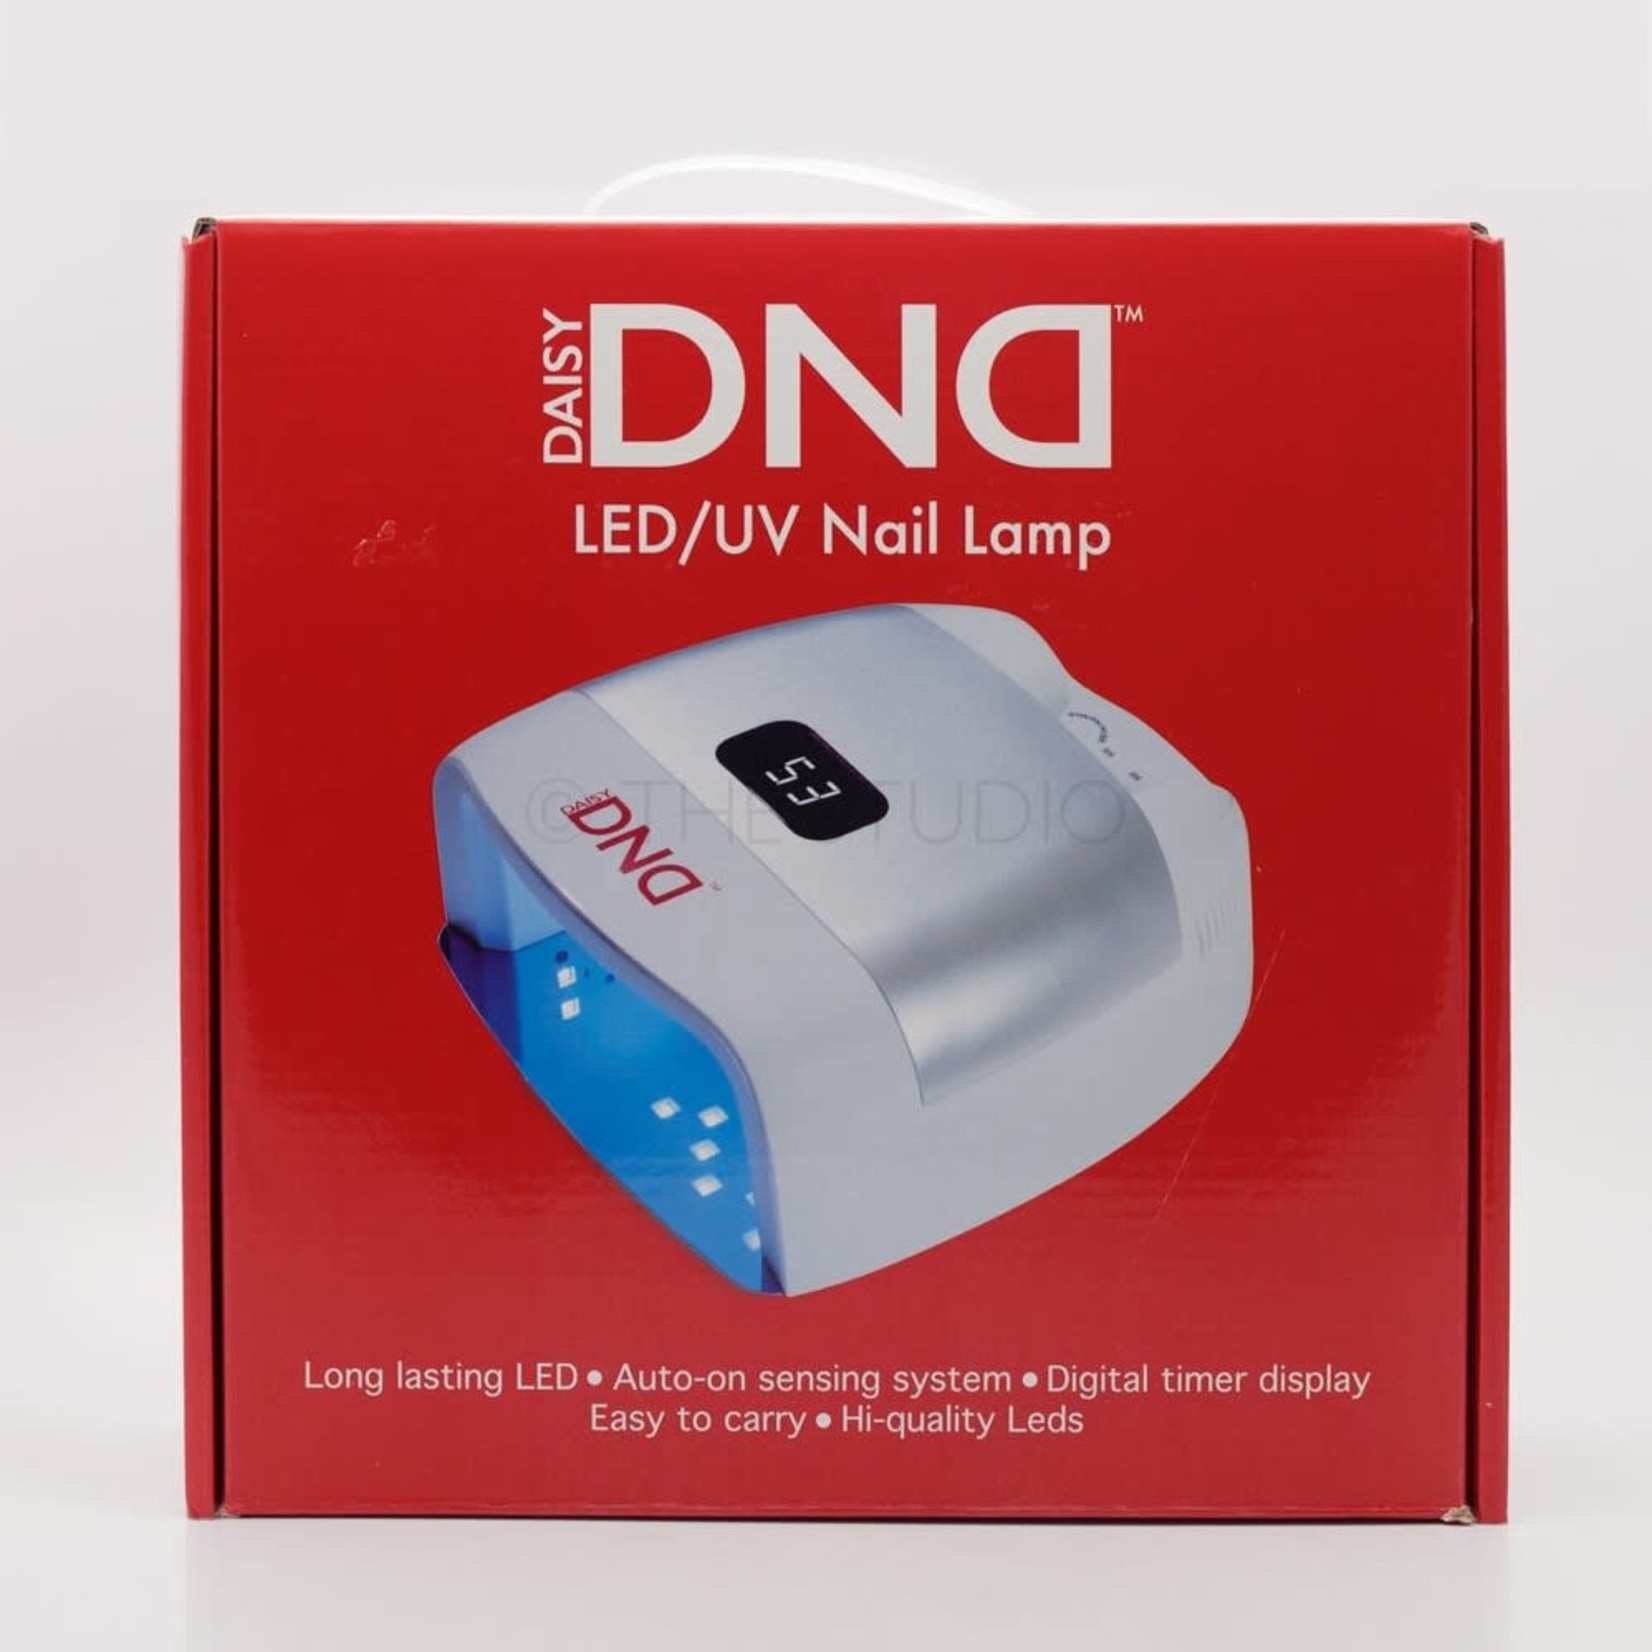 DND DND - Gel Lamp - LED/UV Plastic Body